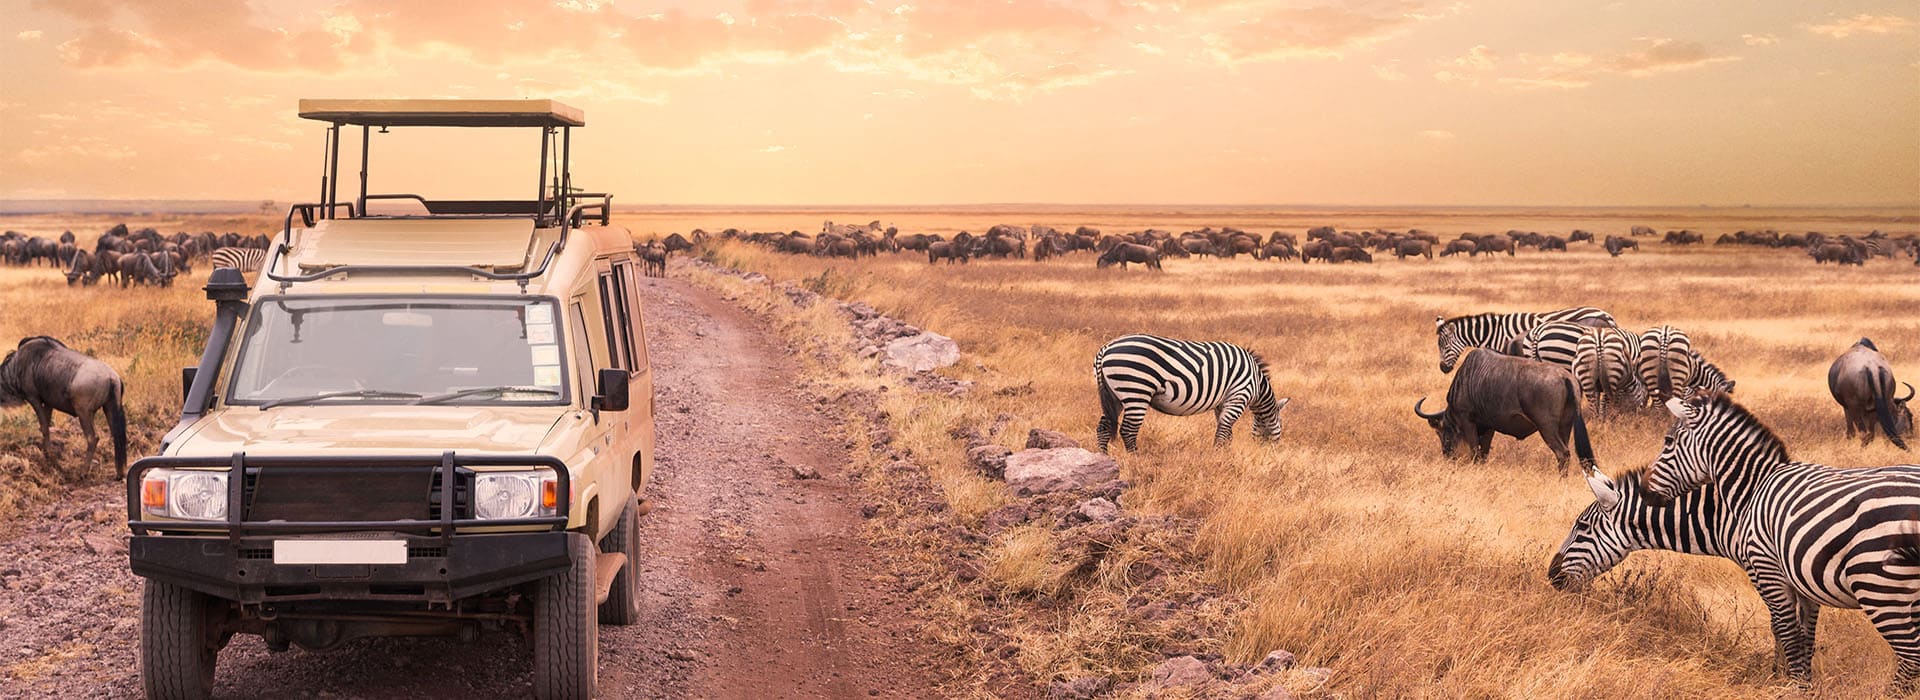 Kleingruppenreise Tansania Serengeti Tierbeobachtungen